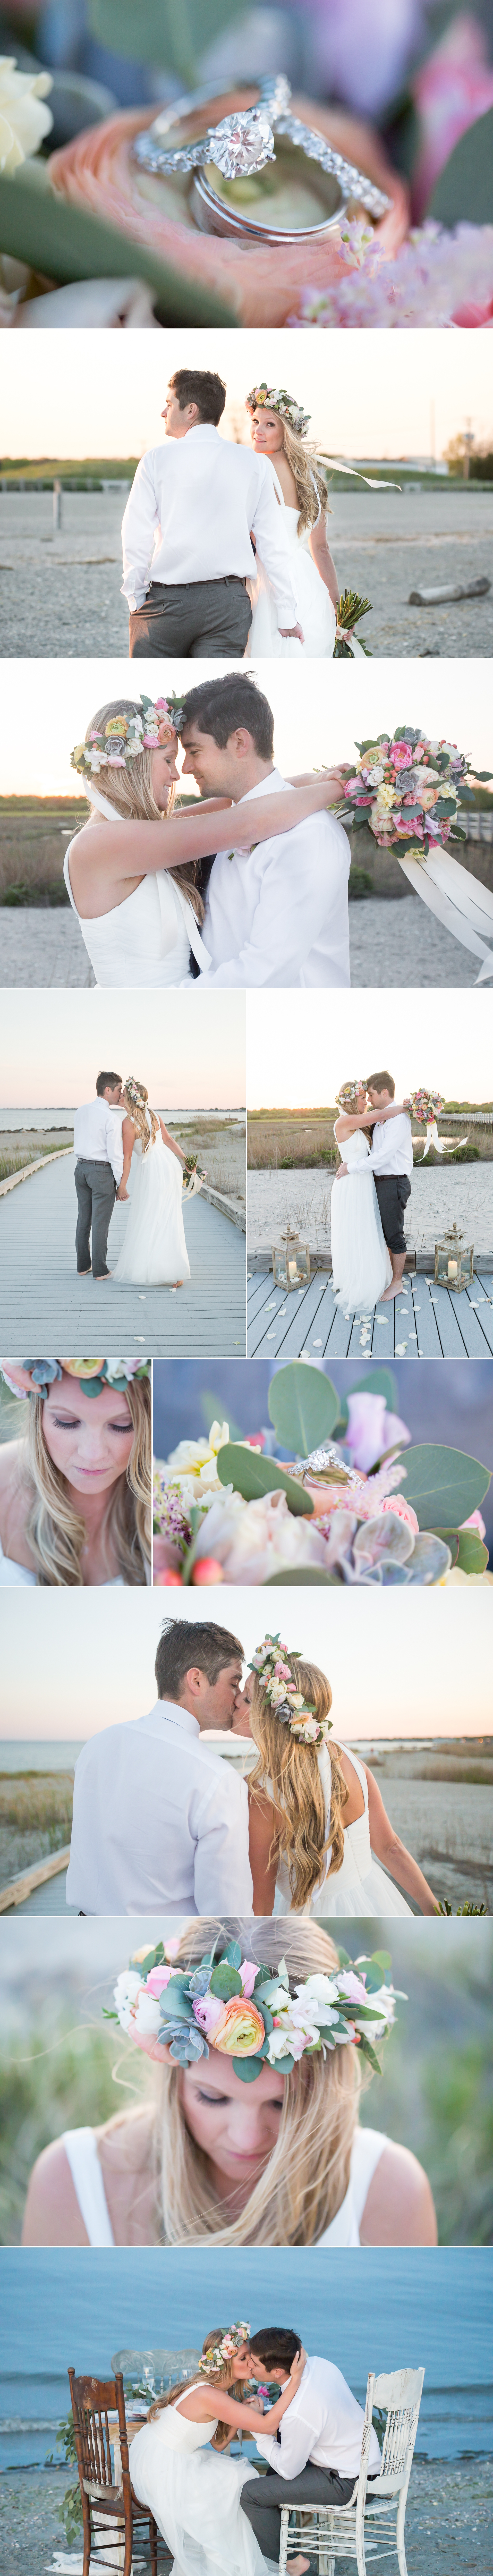 Sunset Beach Wedding Inspiration on Glamour & Grace | Shaina Lee Photography | CT, NYC + Destination Wedding + Engagement Photographer